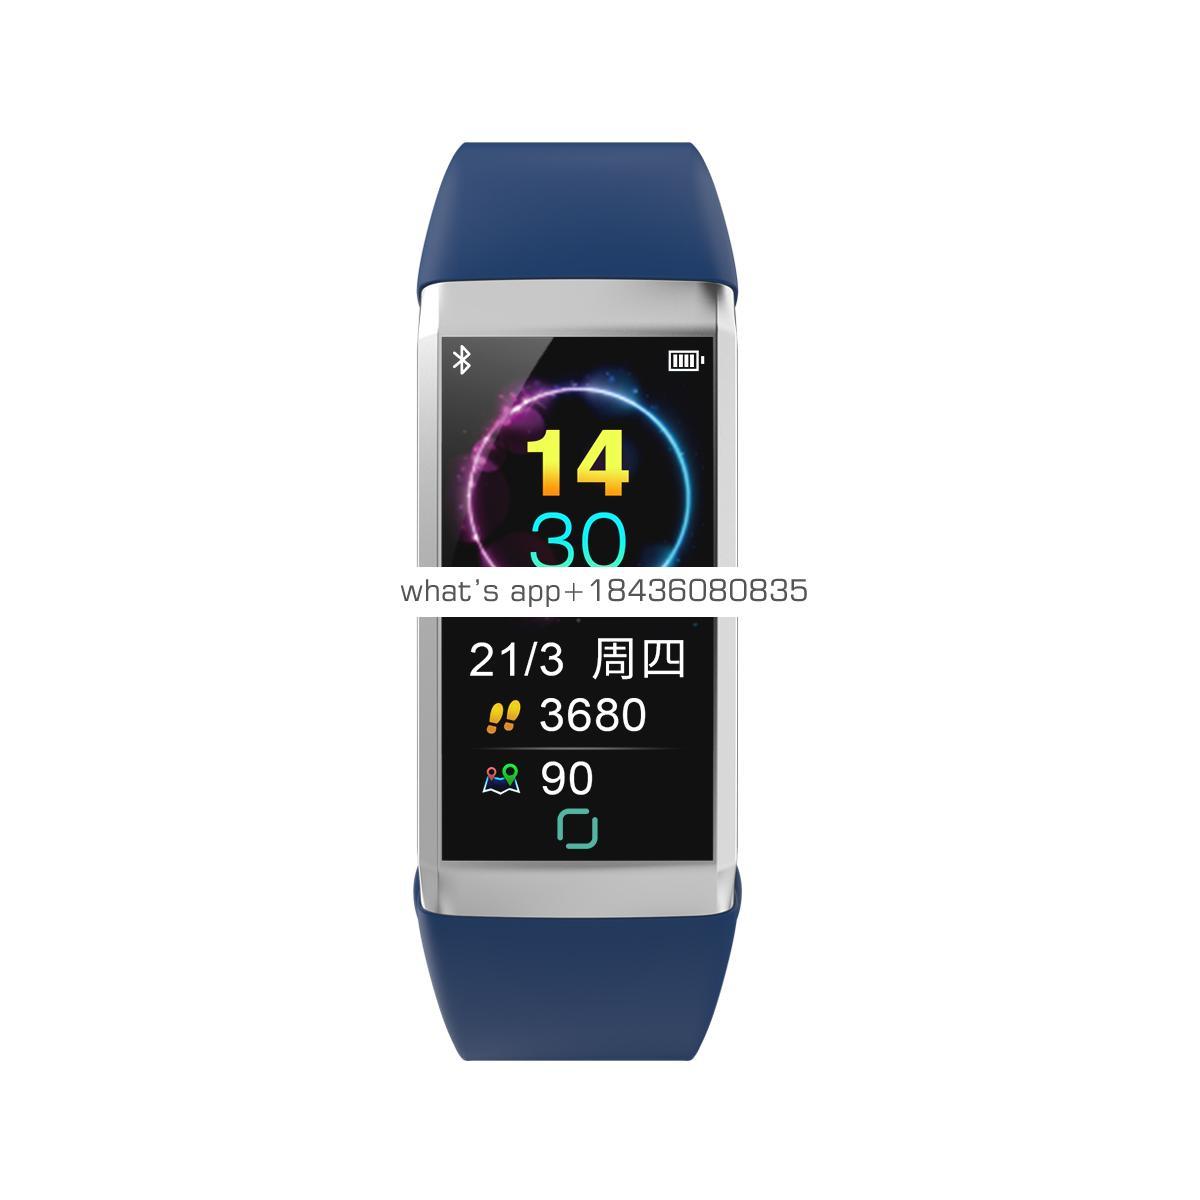 Bracelet smart watch Waterproof smart watch factory bracelet smart watch with heart rate monitor